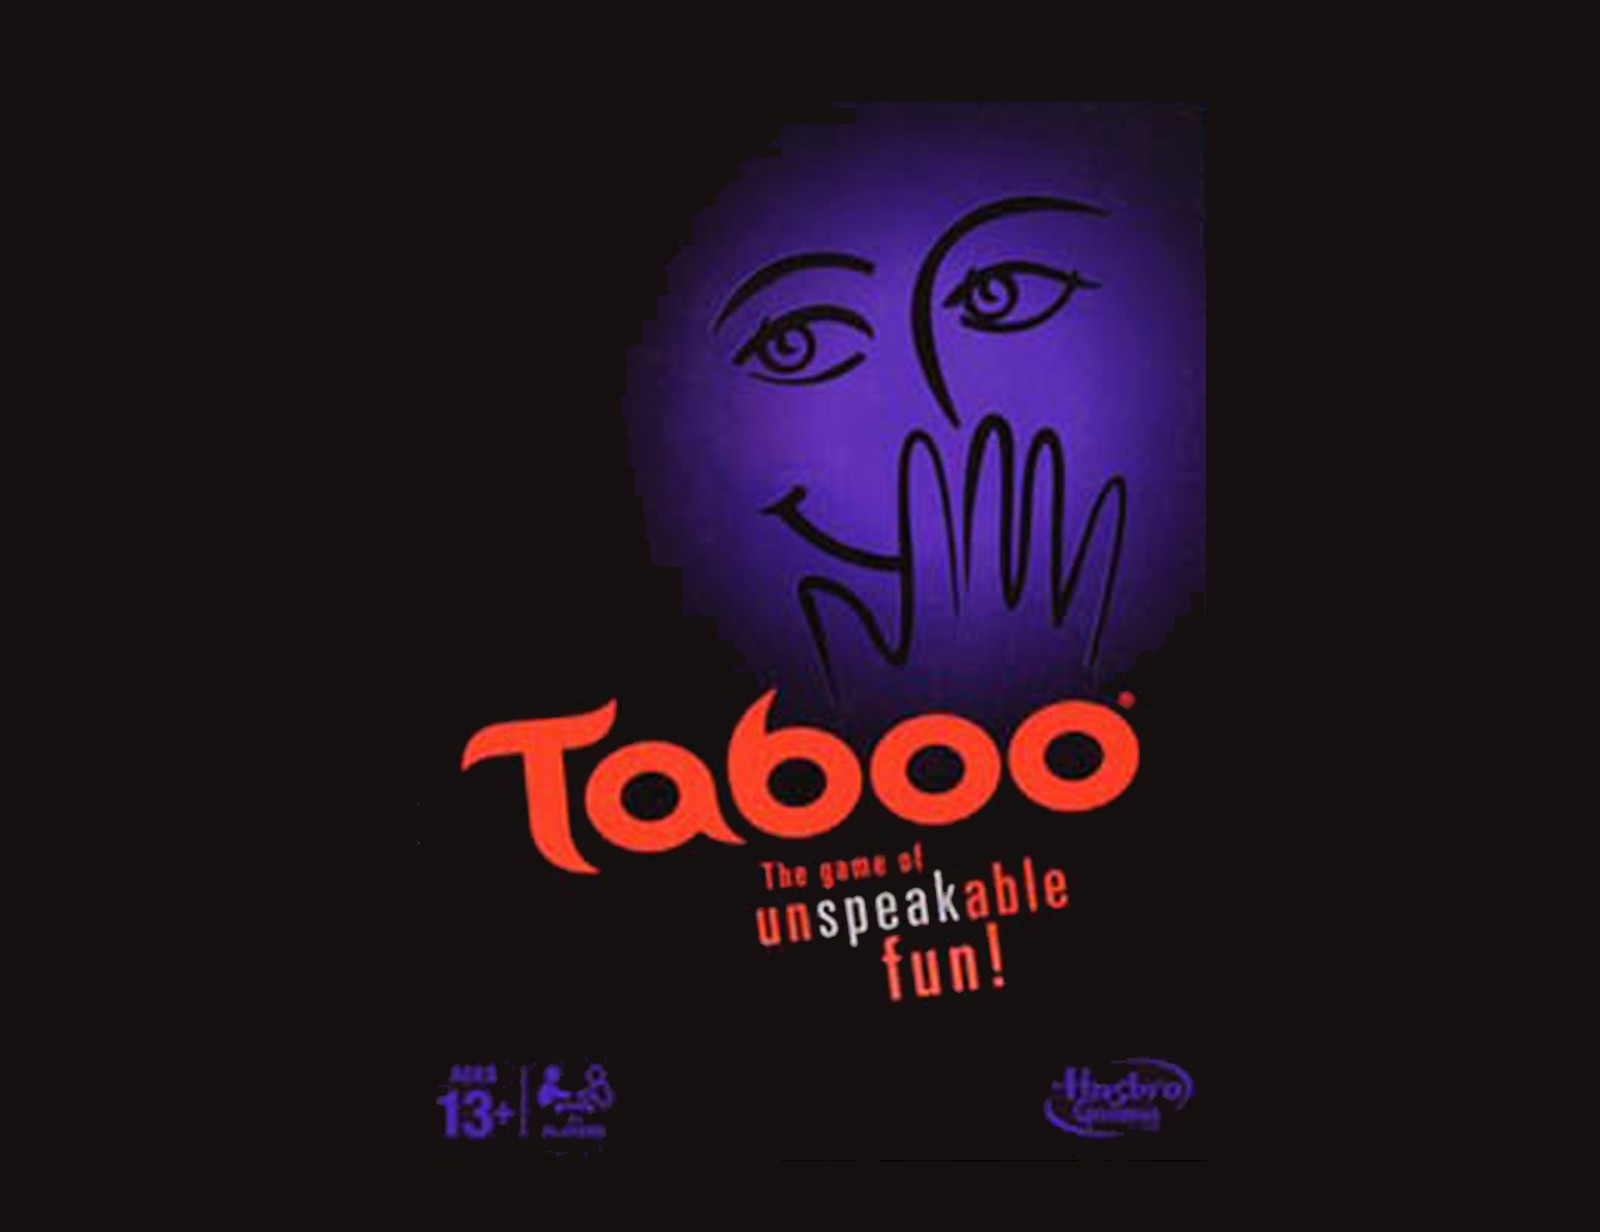 taboo